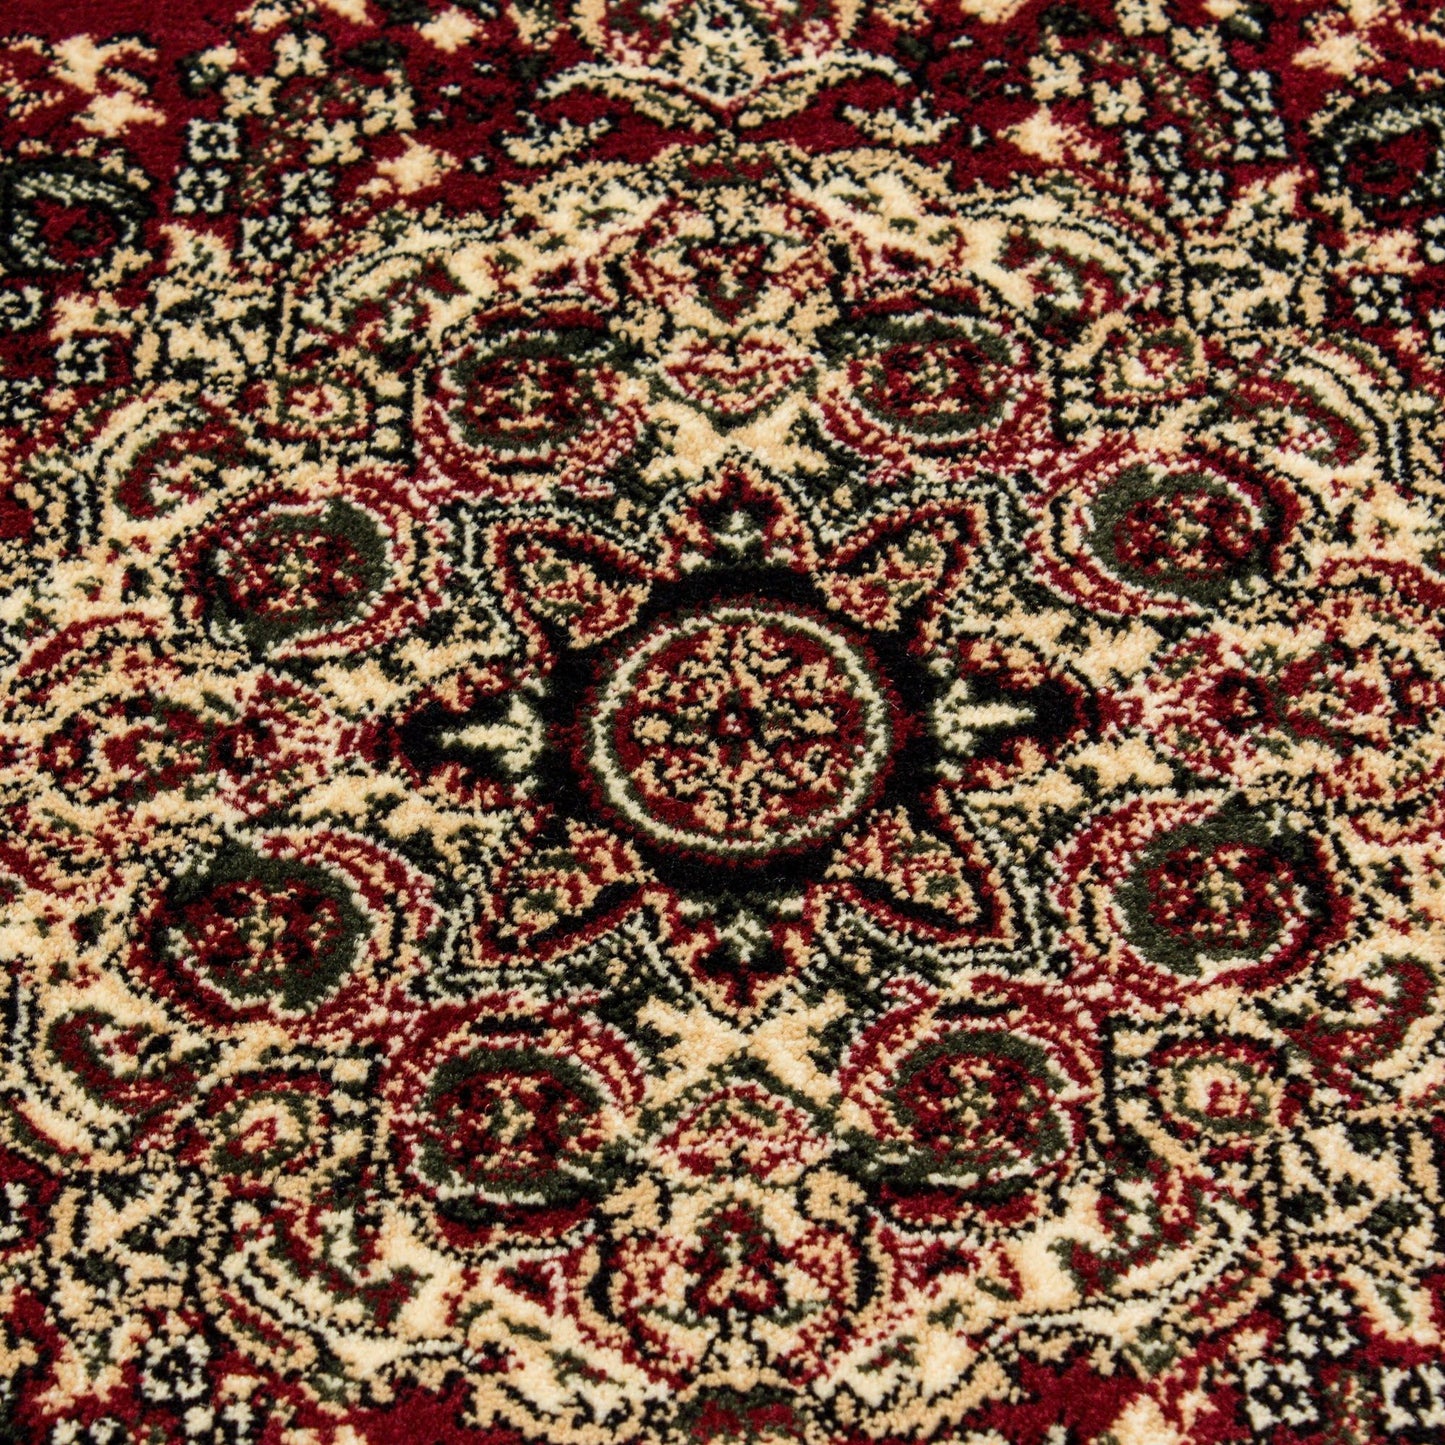 MARRAKESH0297RED Tæppe (160 x 230) - Rød